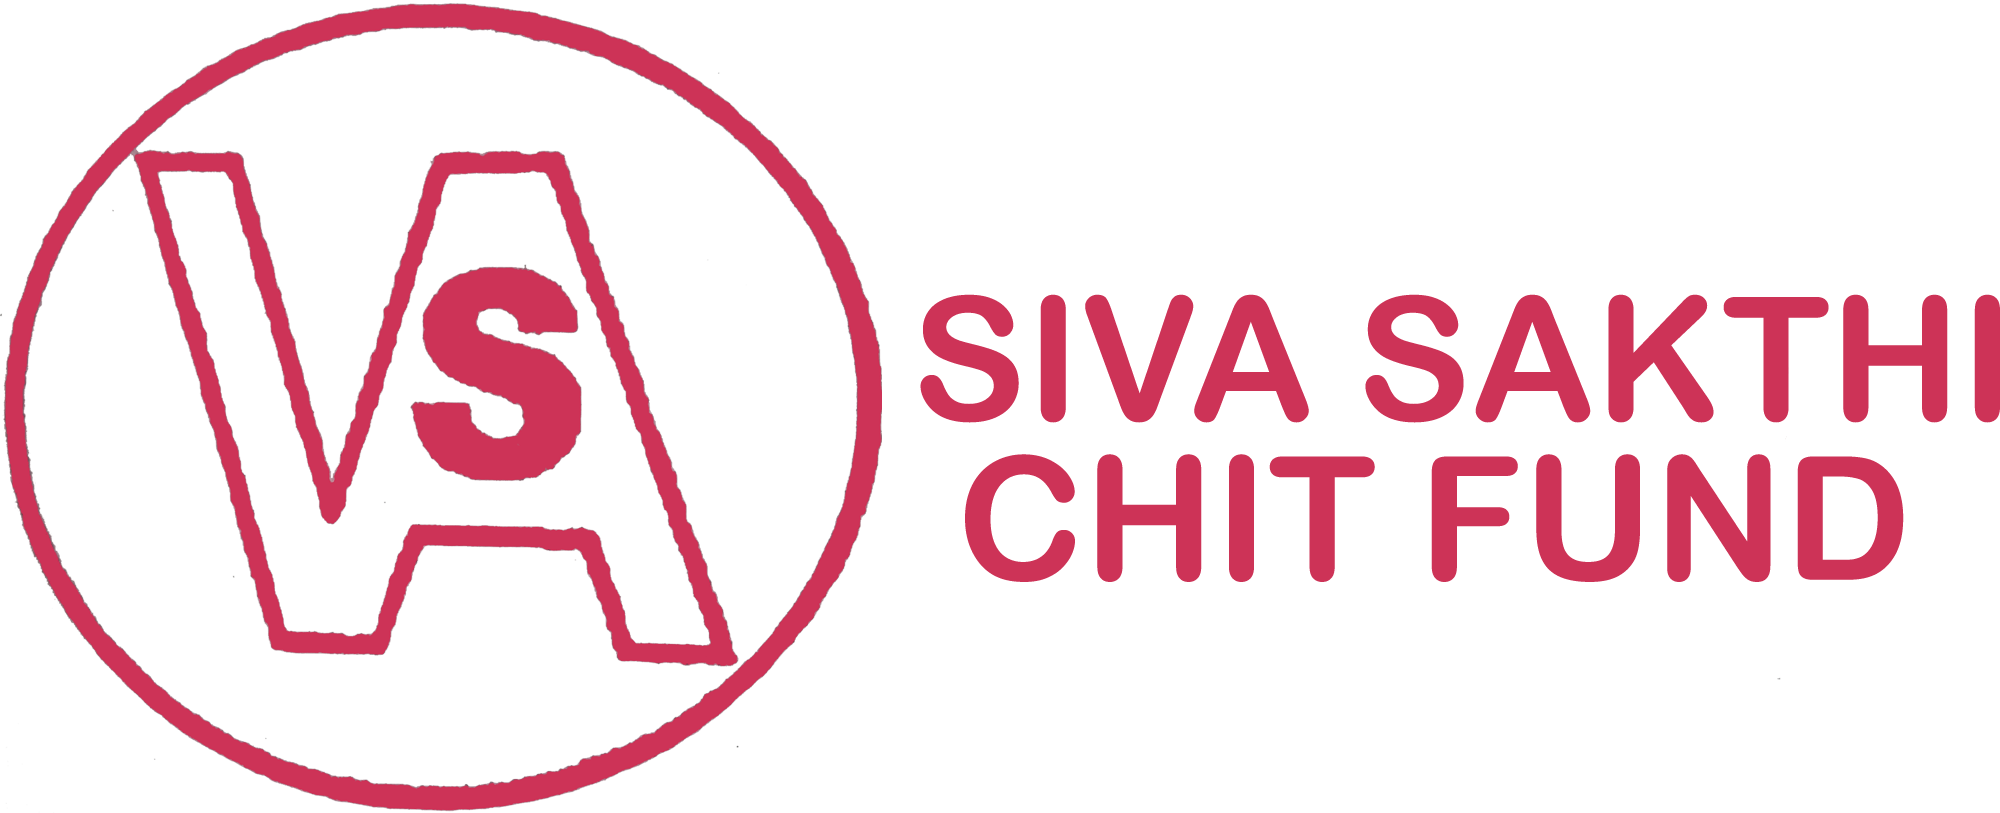 SIVA SHAKTHI CHIT FUND